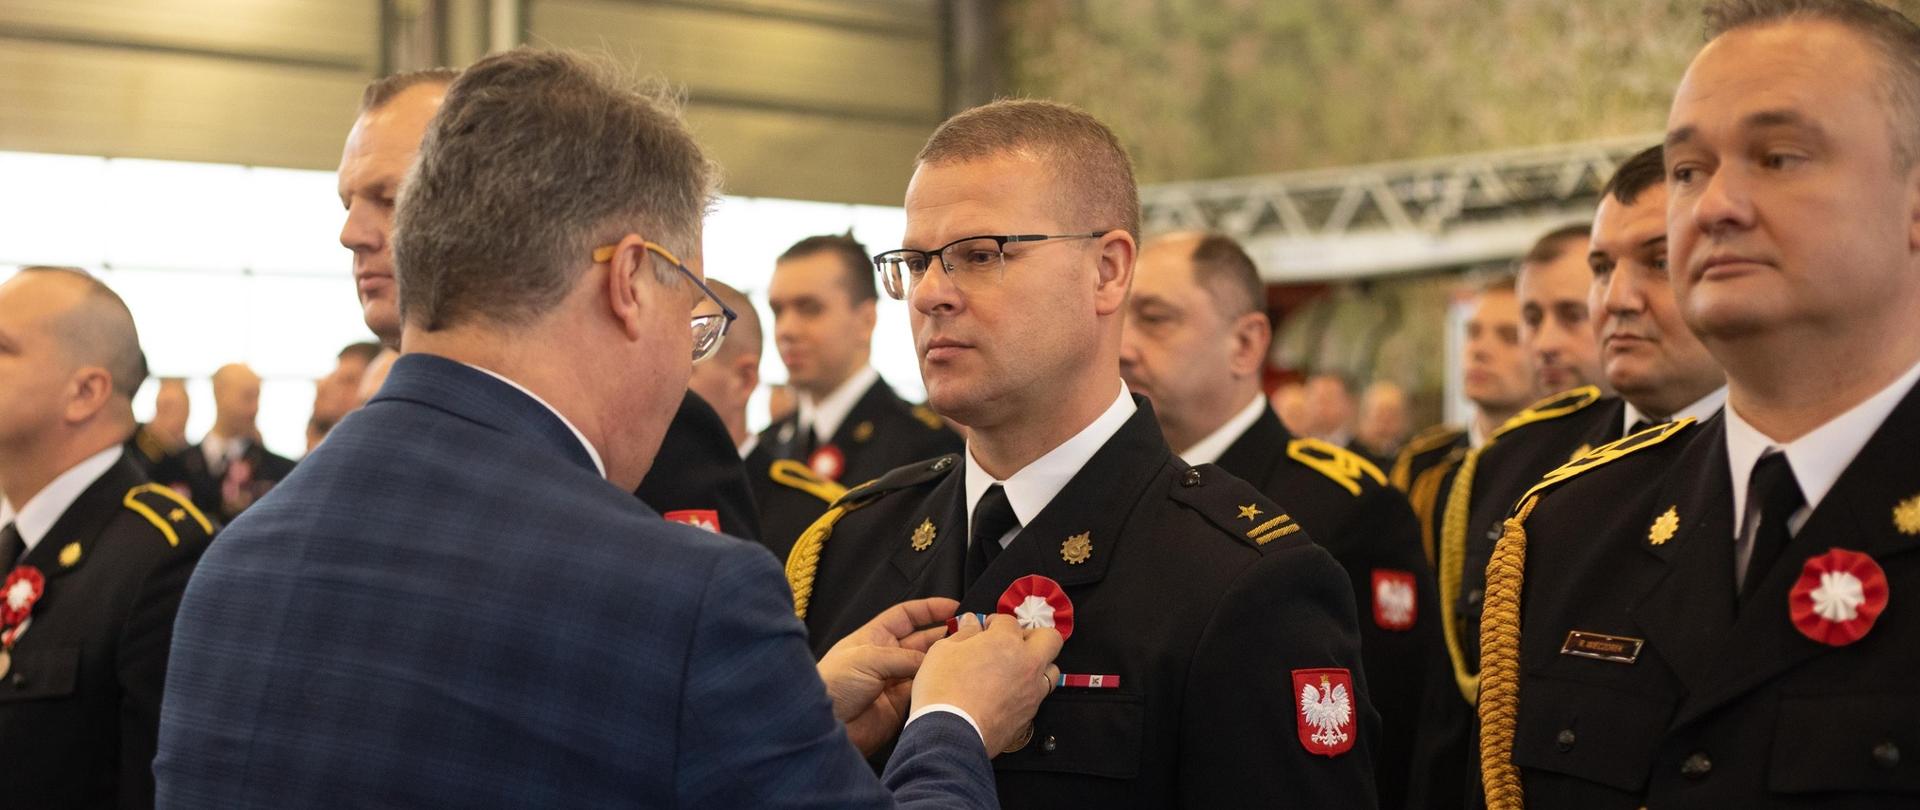 Sekretarza Stanu w MSWiA Pana Maciej Wąsik przypina odznakę wyróżnionemu funkcjonariuszowi